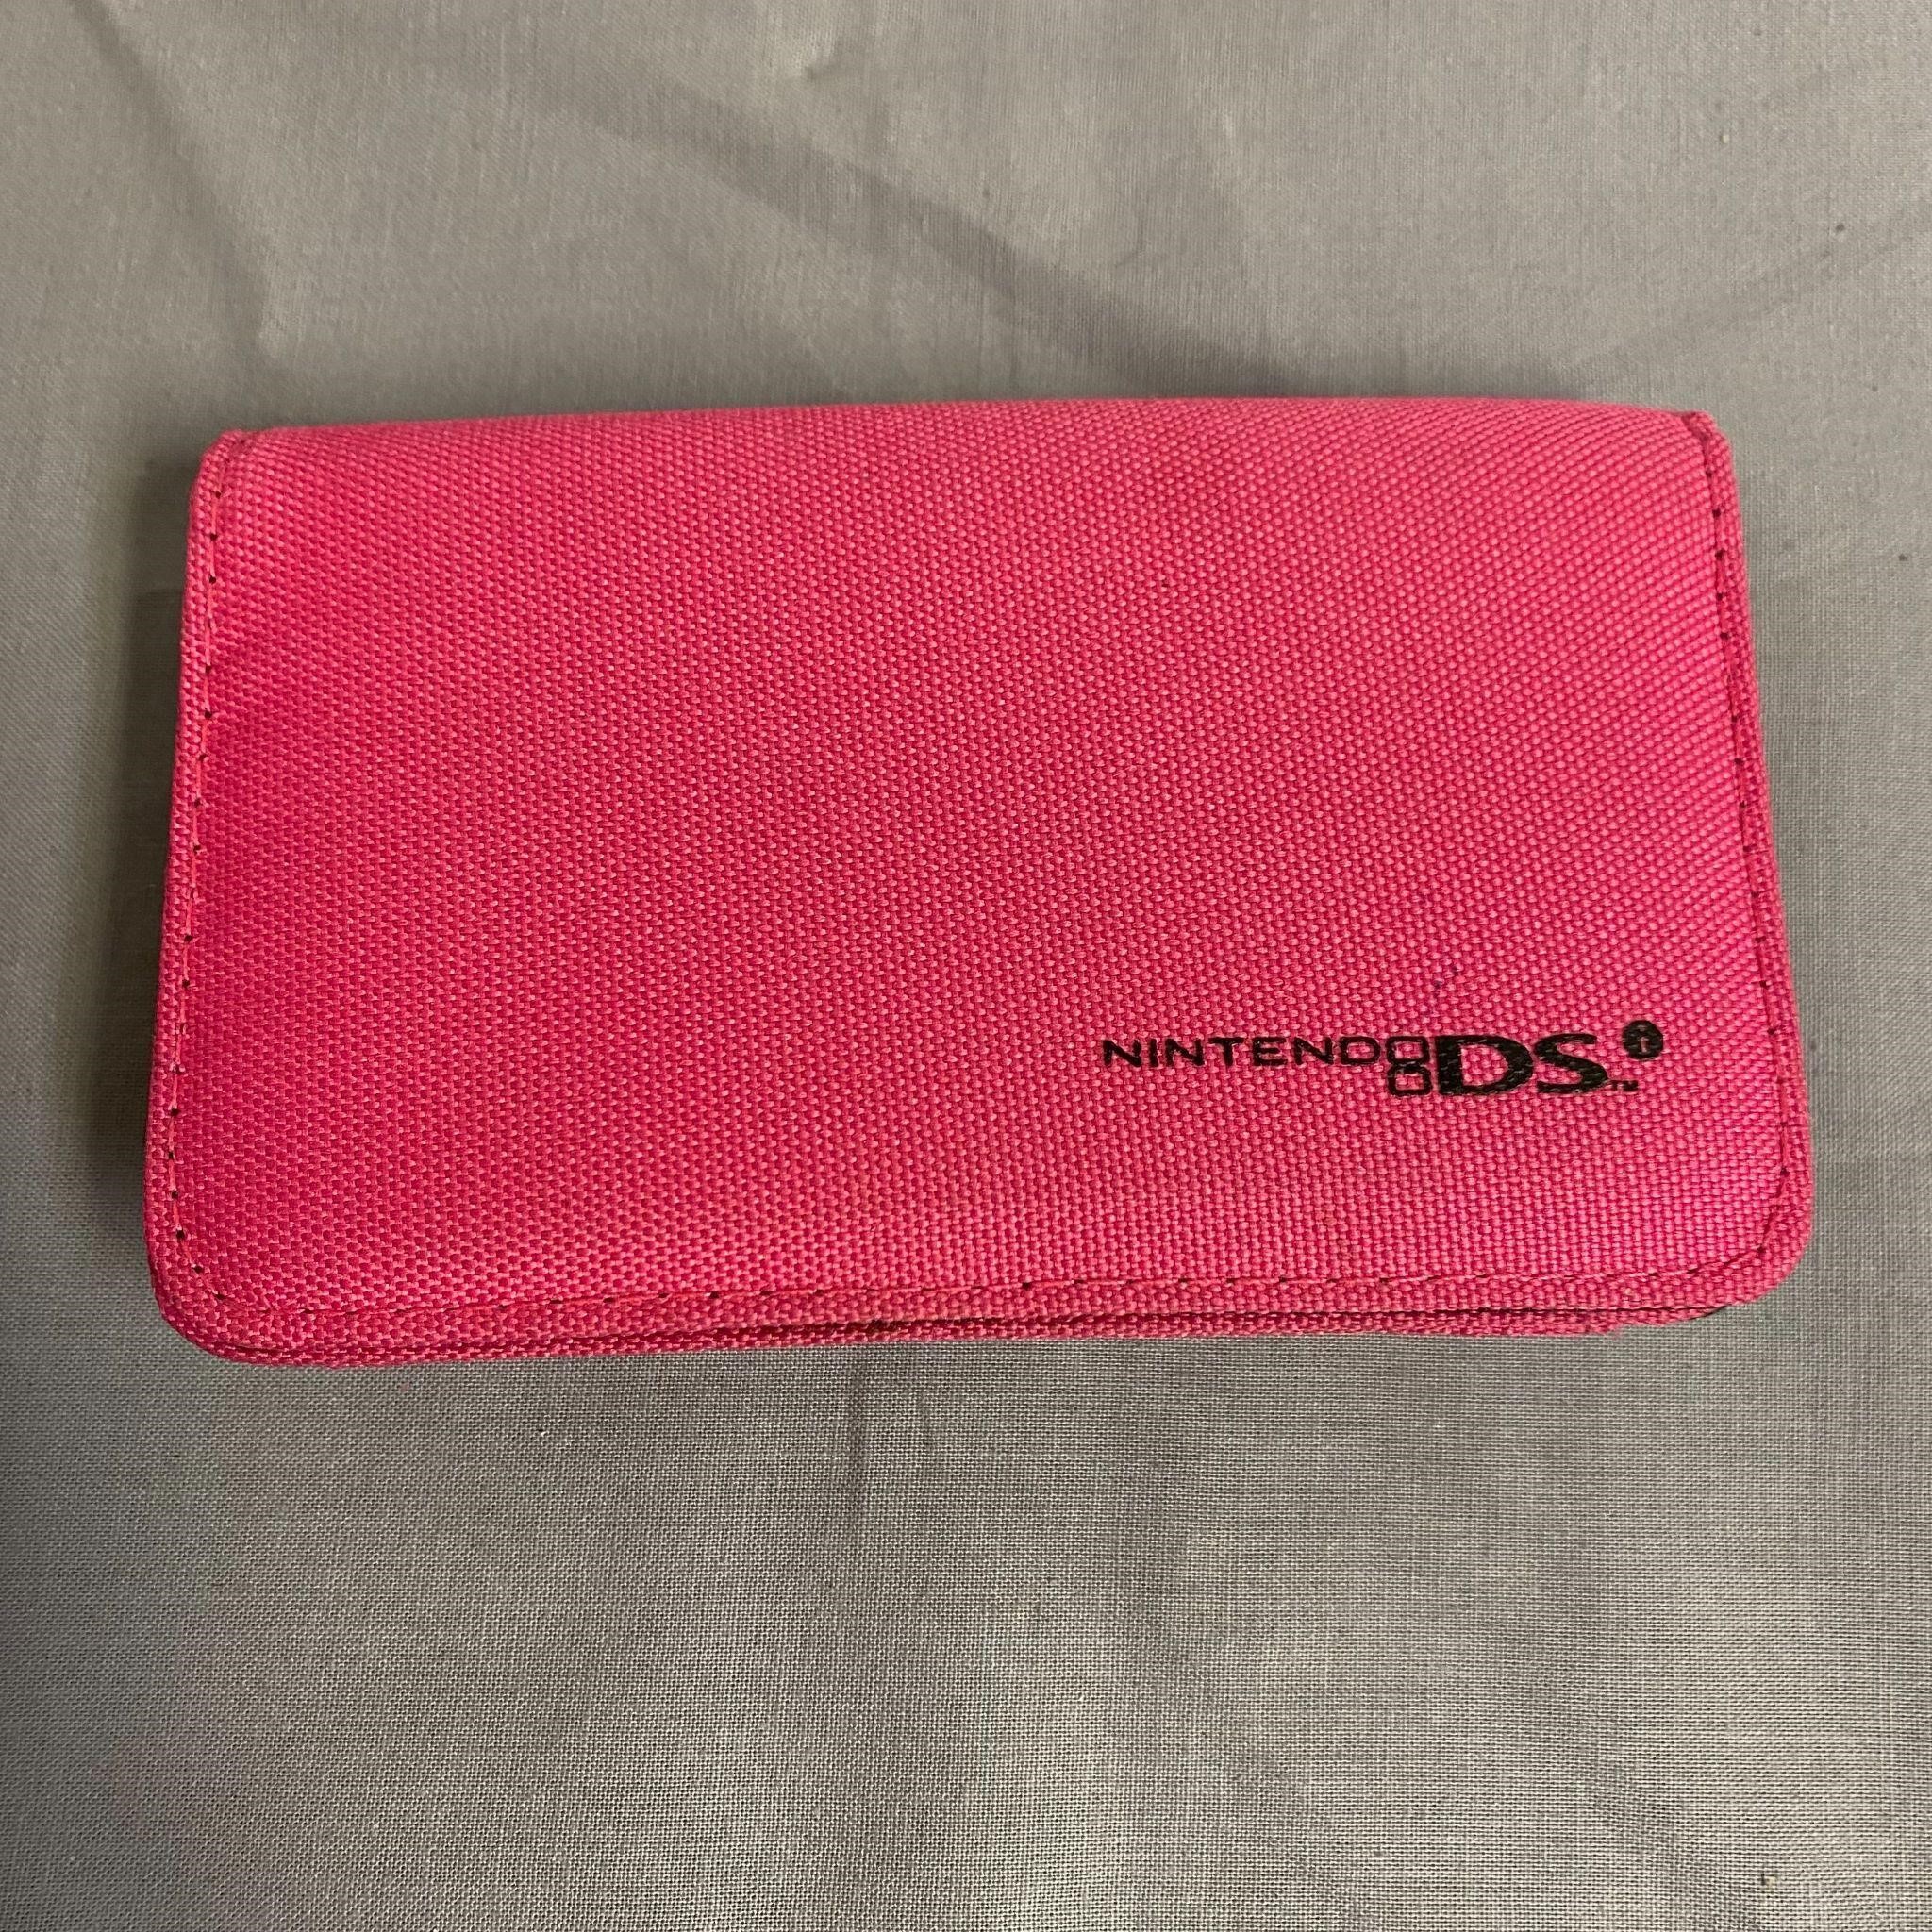 Nintendo DSi Pink Soft Travel Case Bag